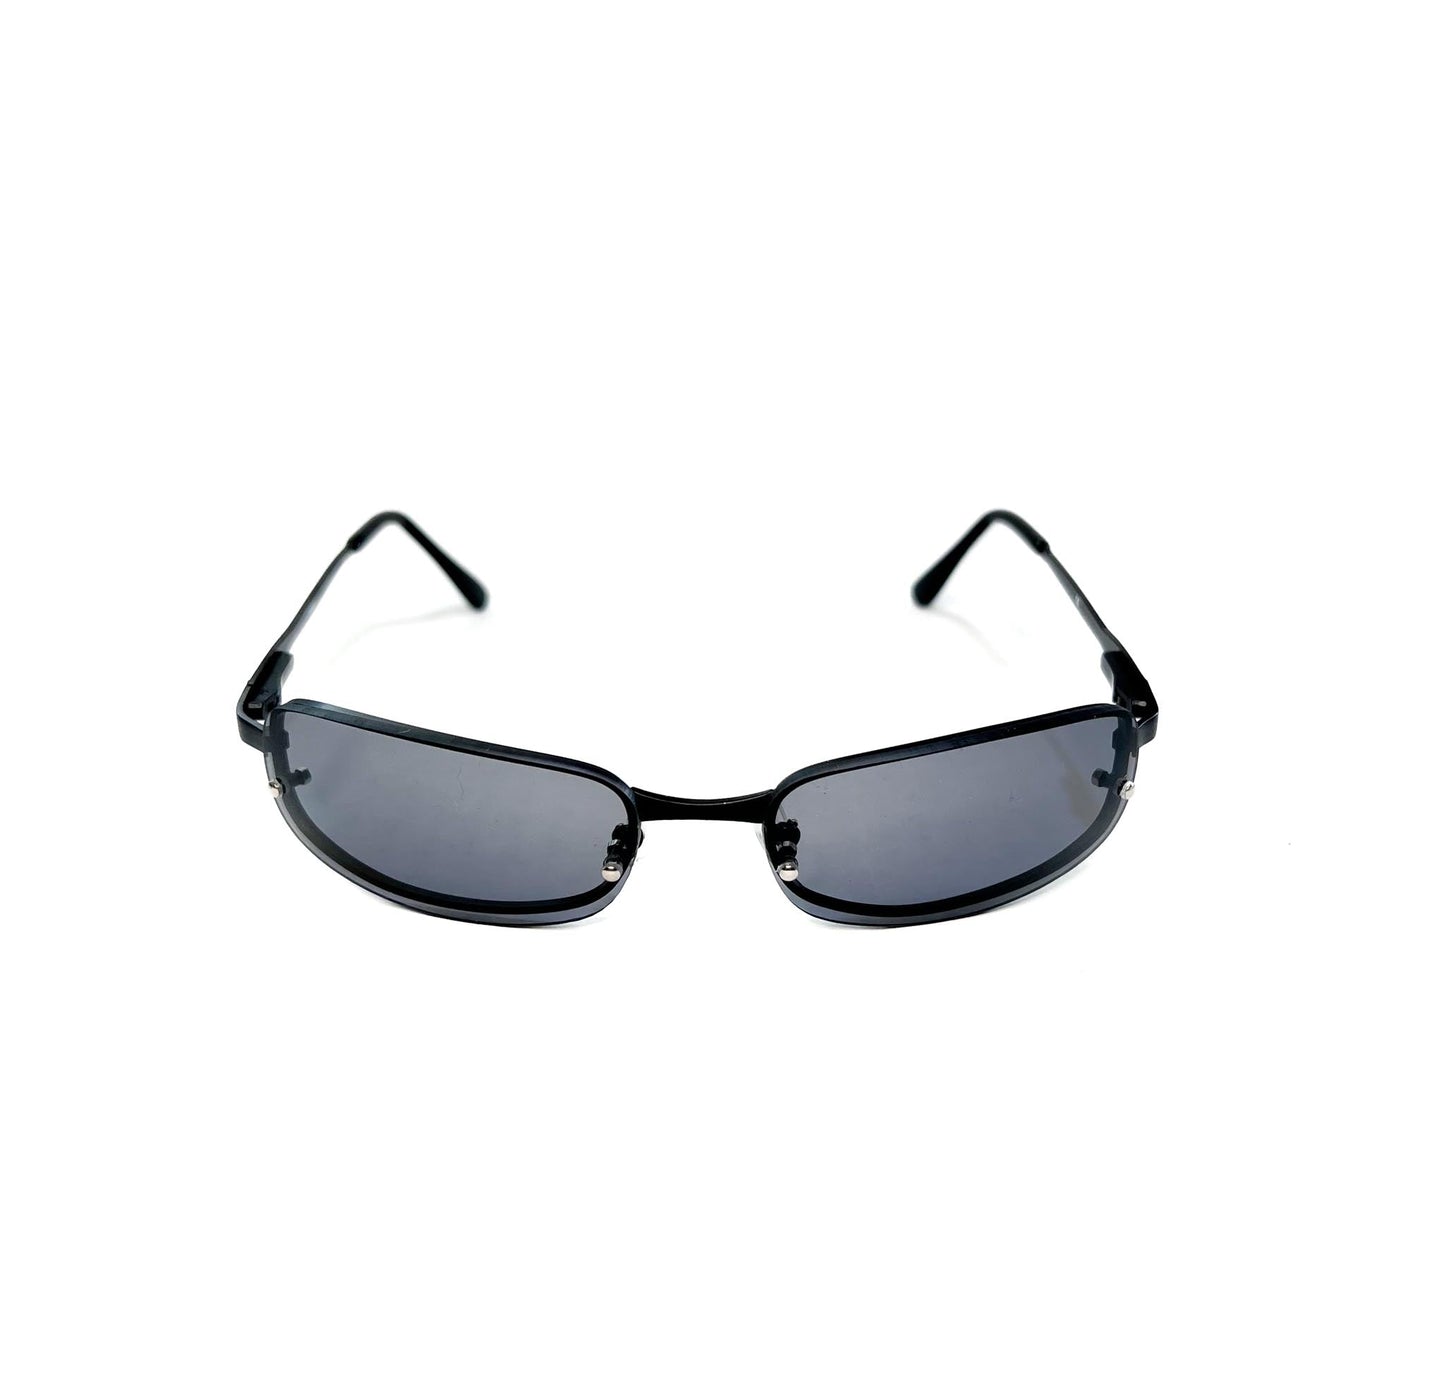 SX Y2k dark with metallic details sunglasses